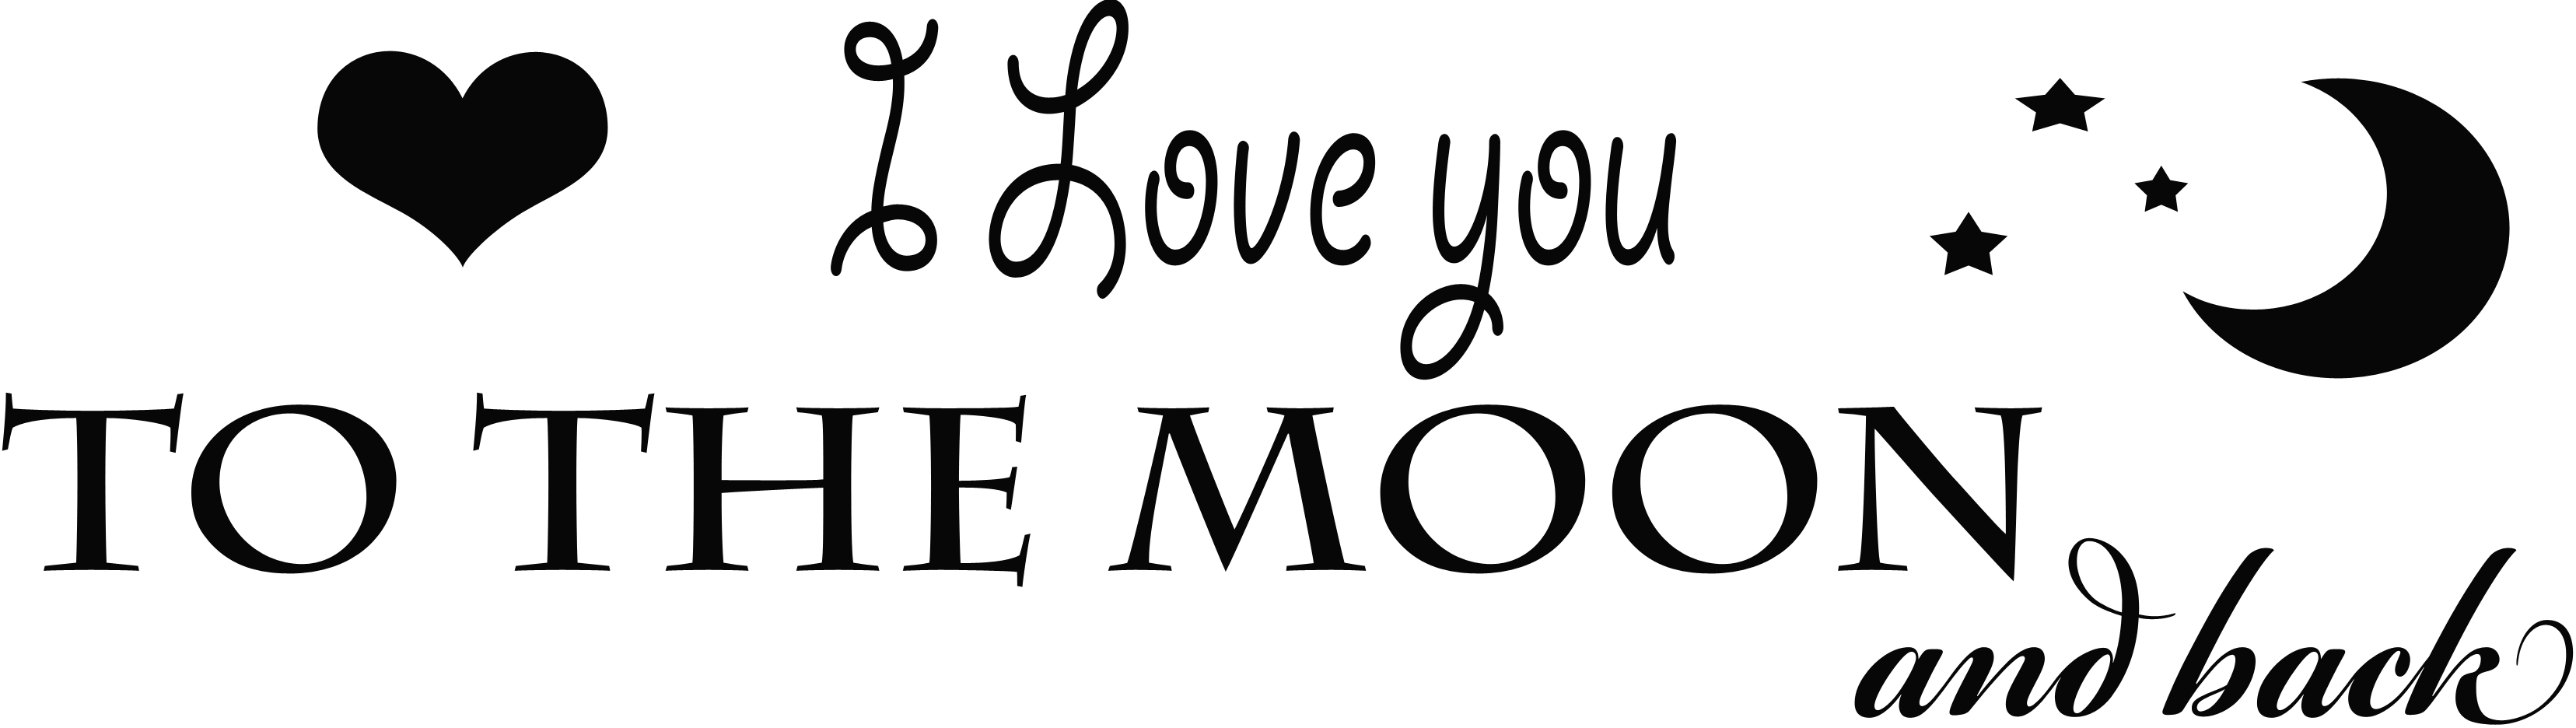 Te amo a la luna y la imagen Transparente PNG